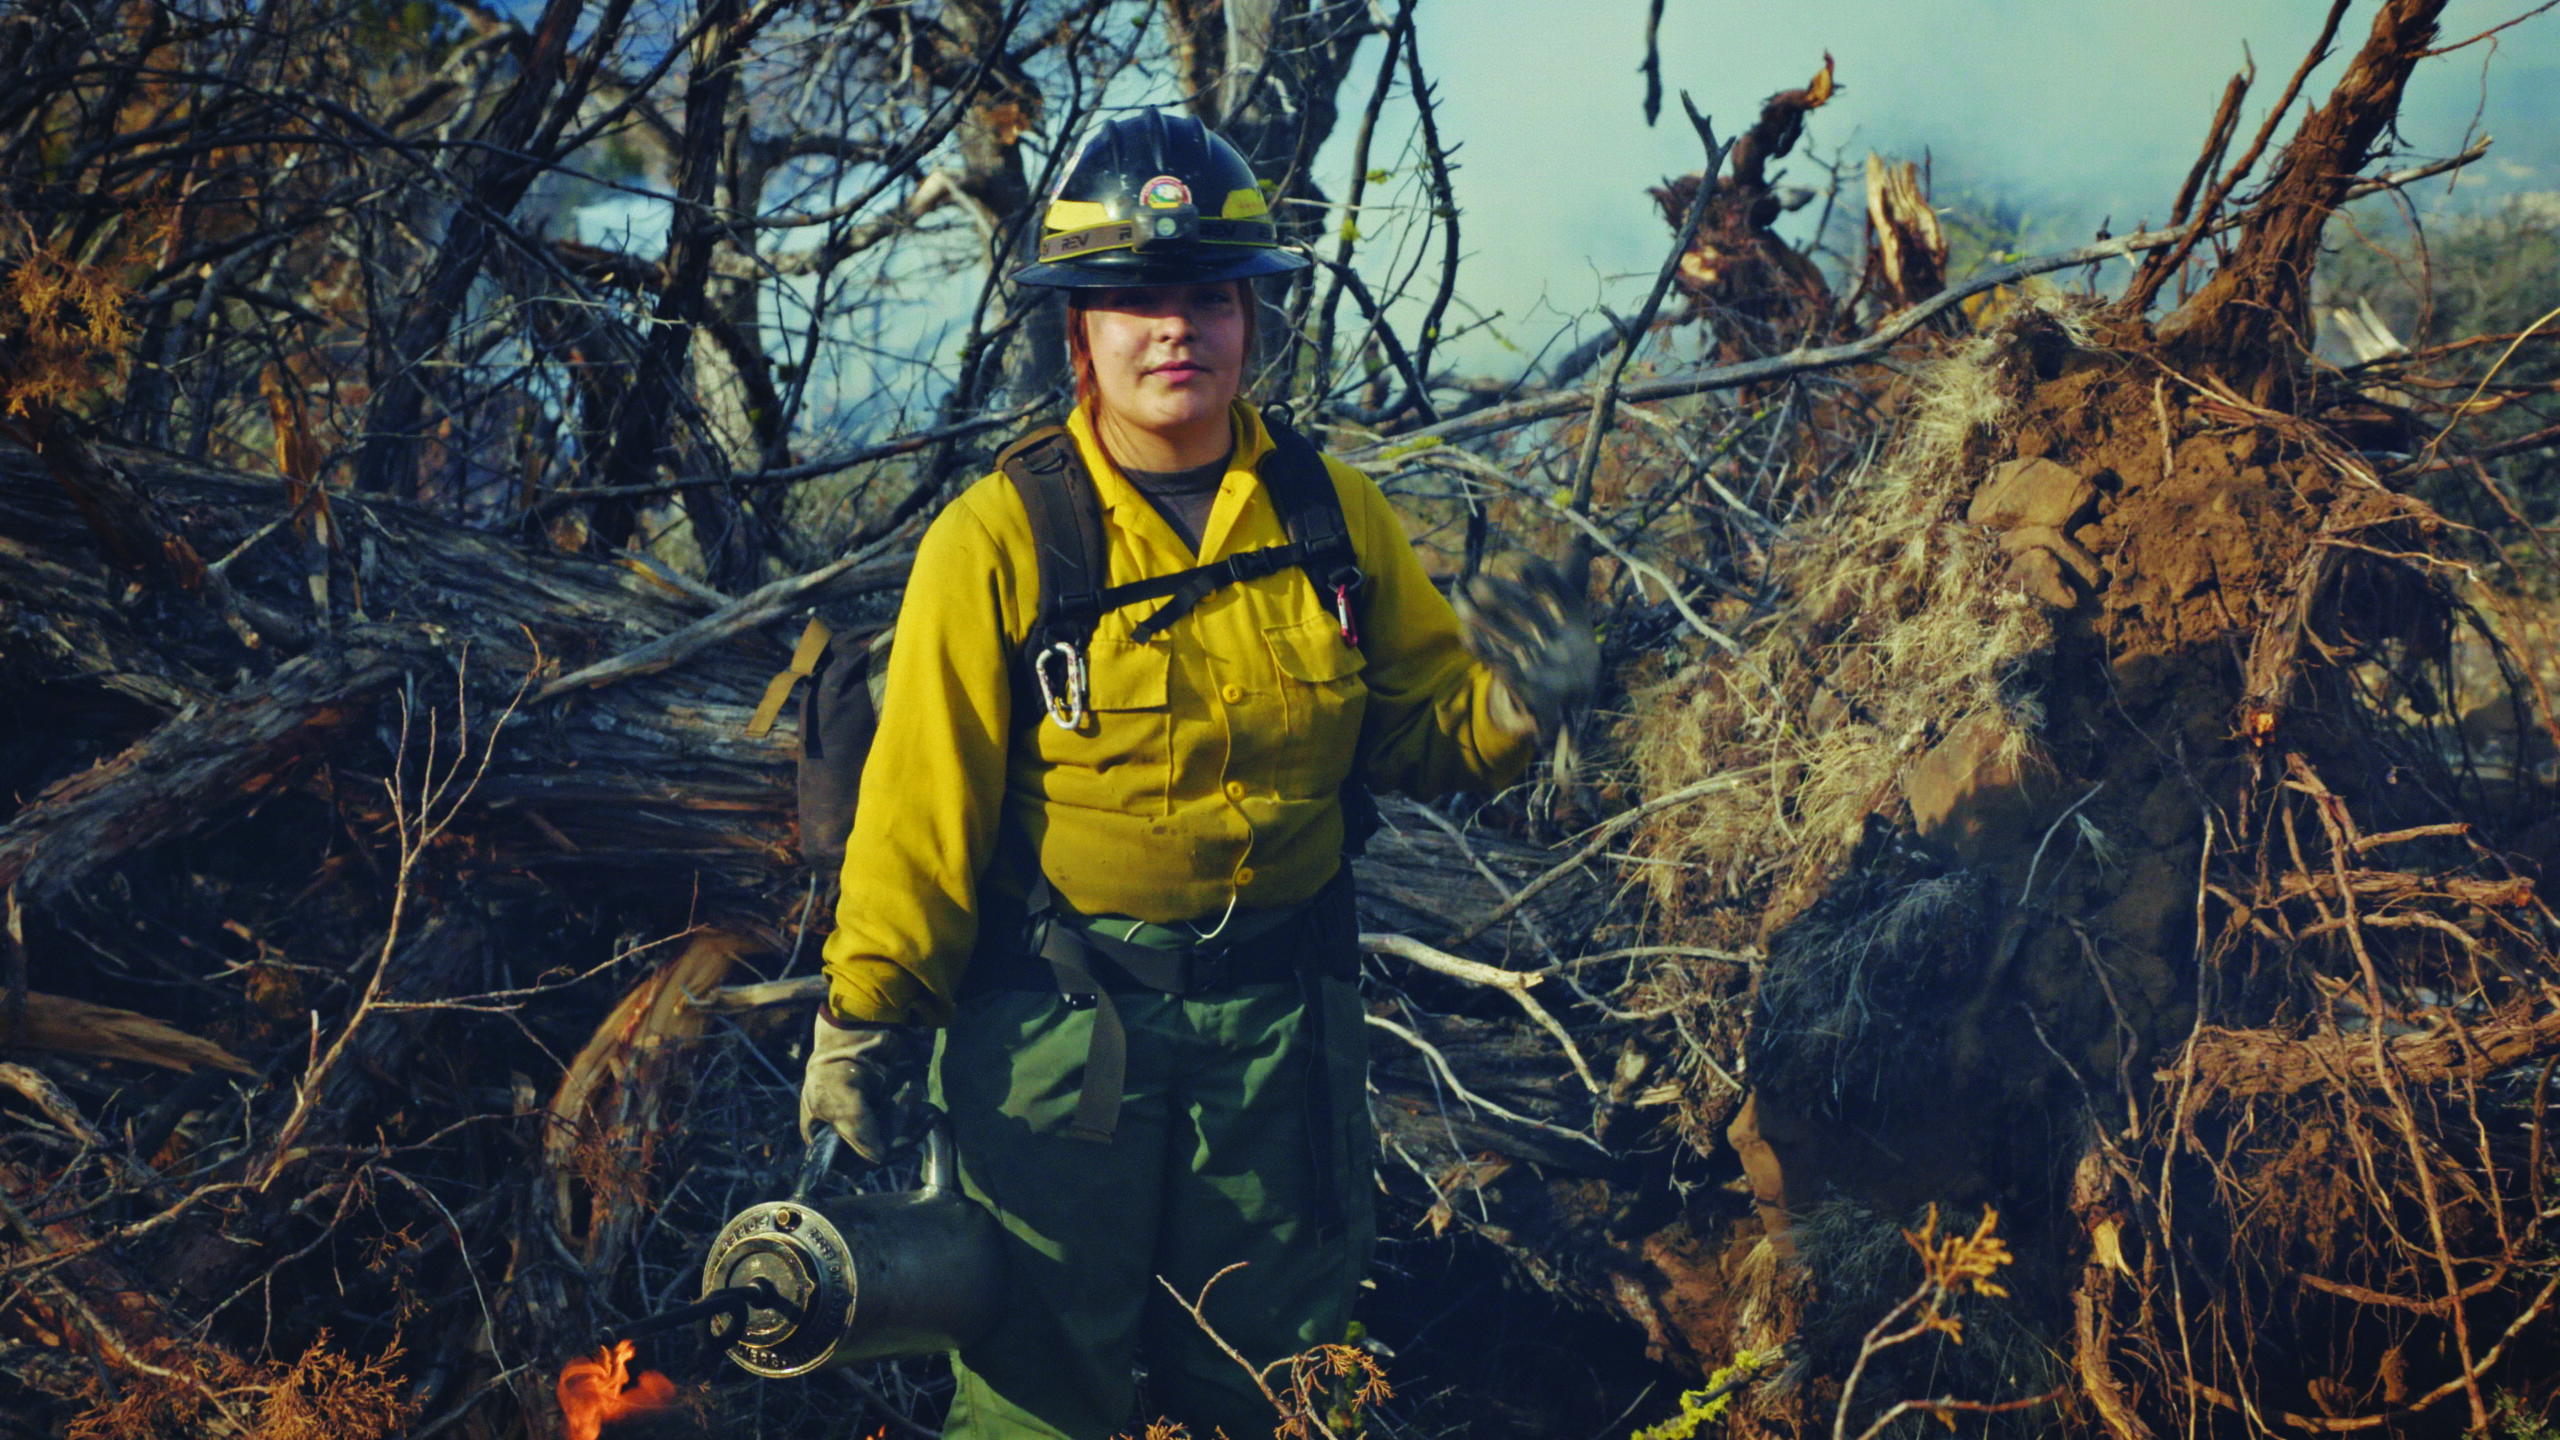 Firefighter Film - CBS News